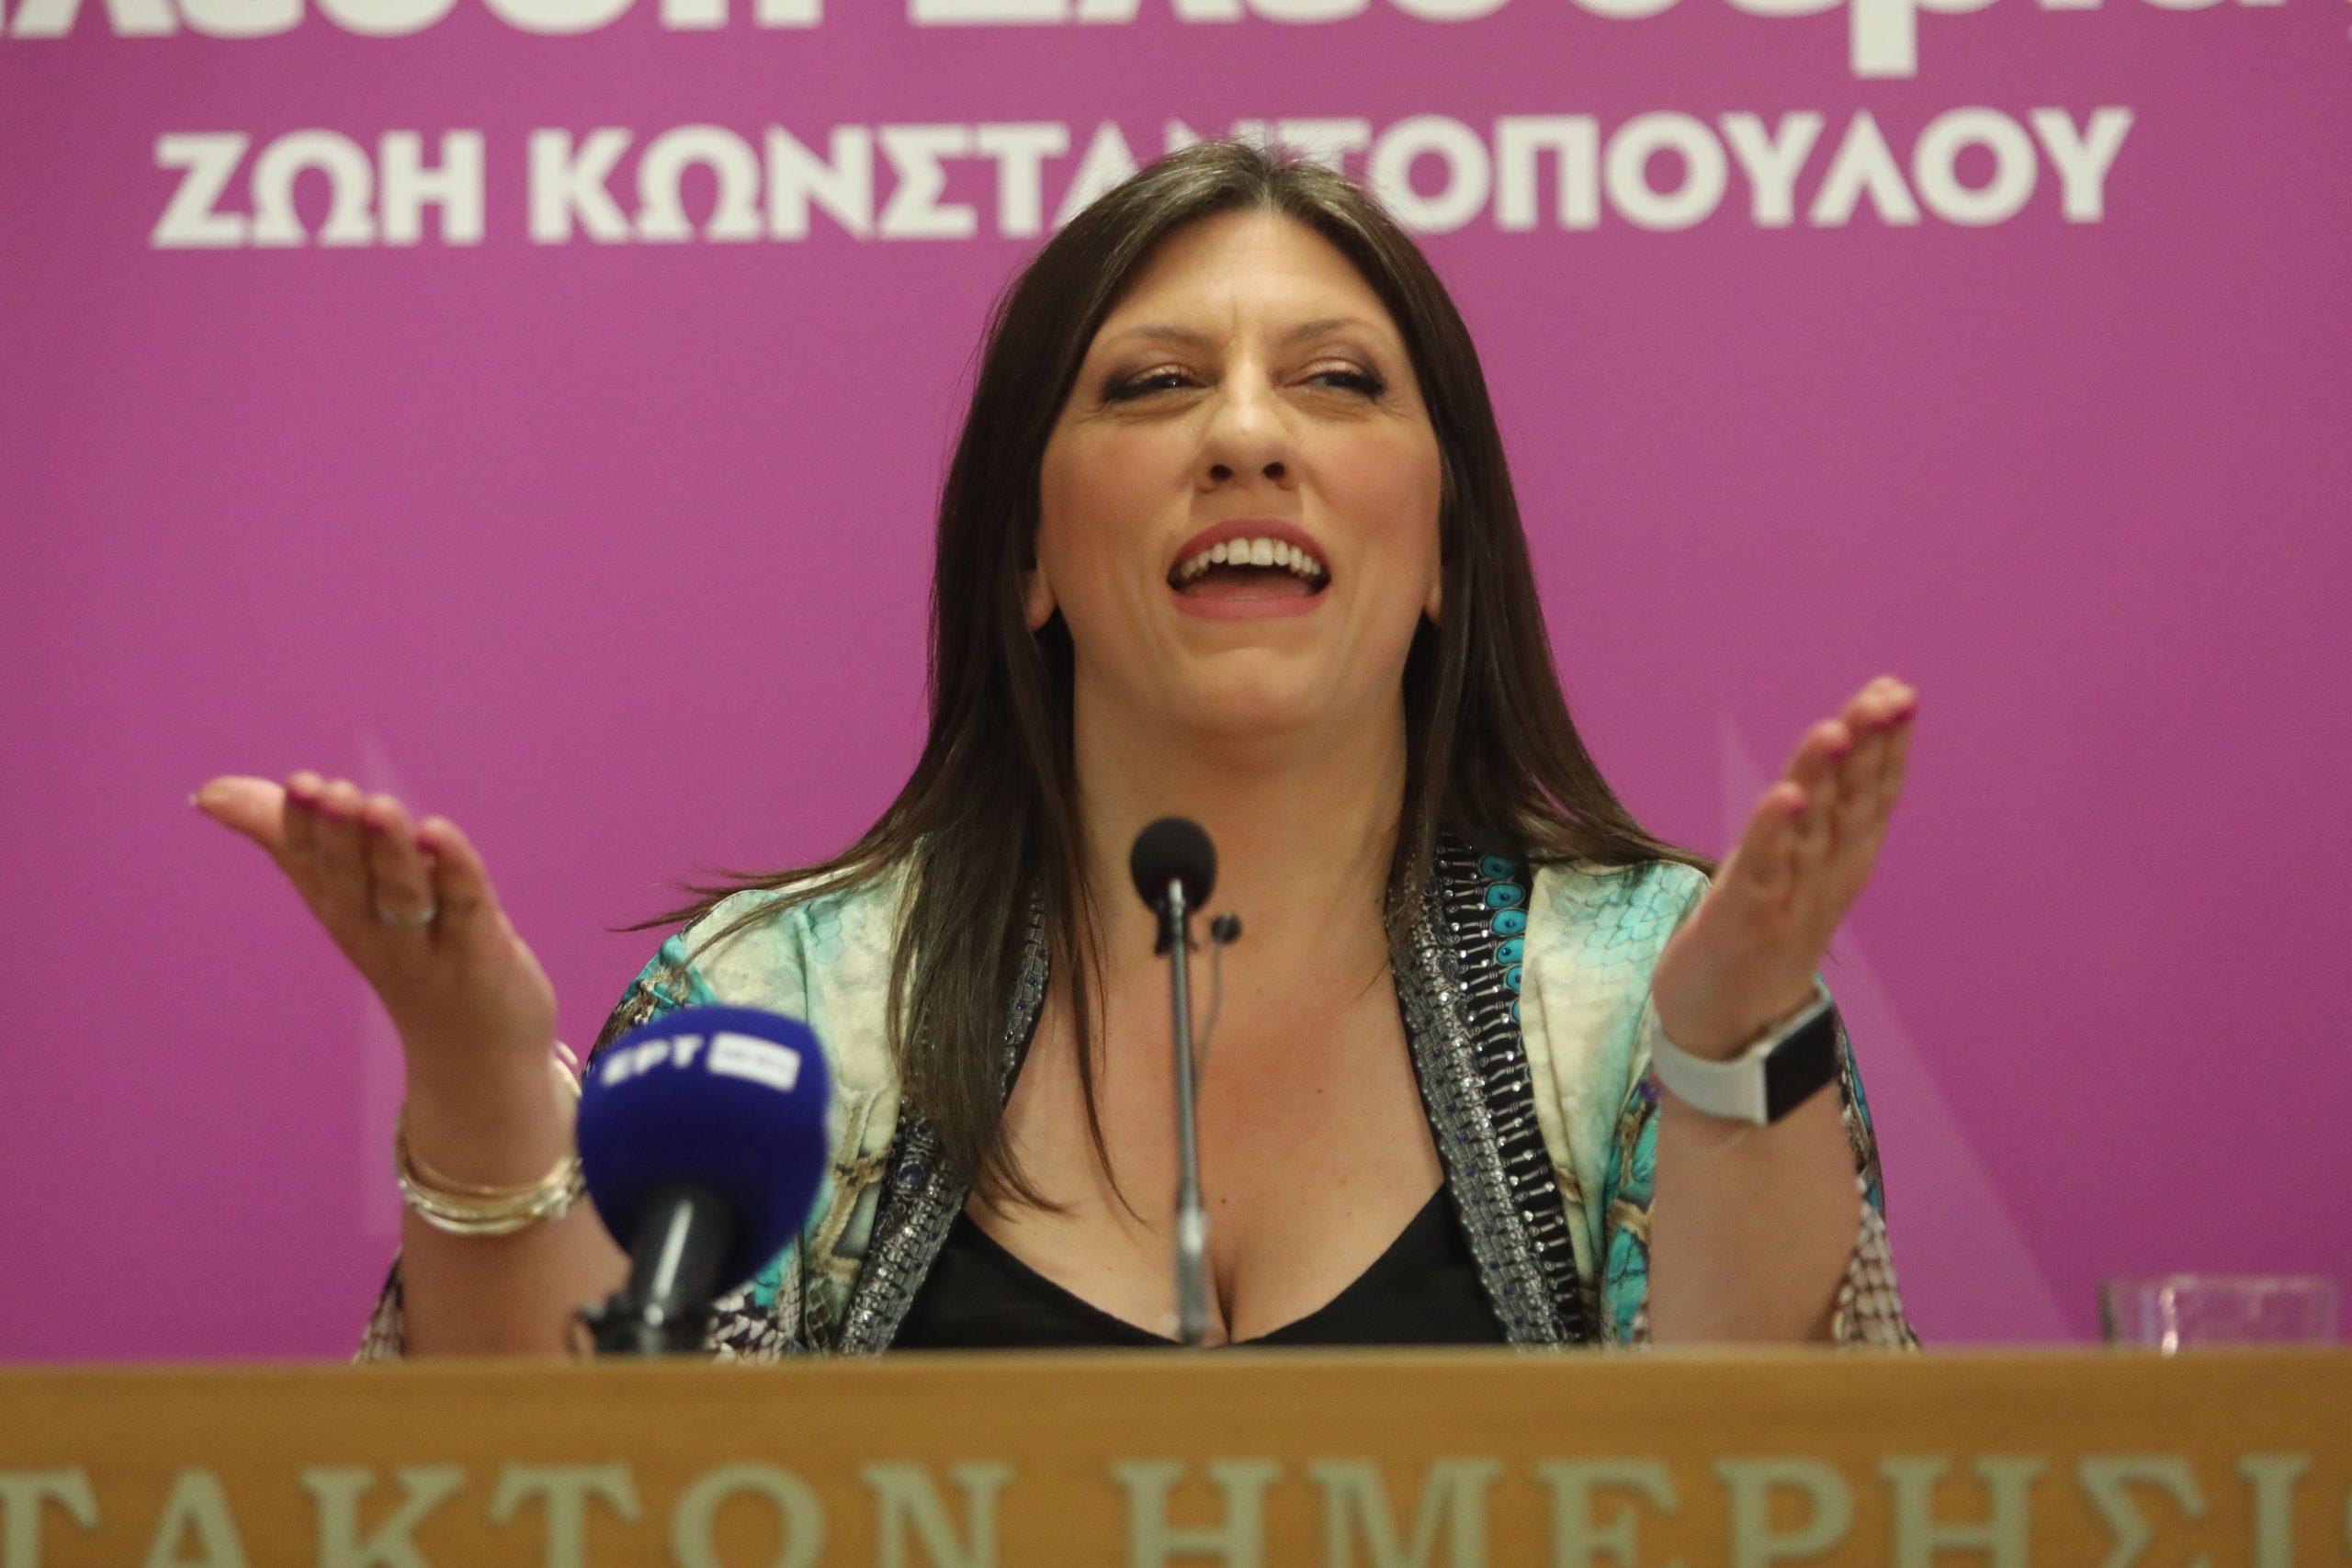 Το νέο προεκλογικό σποτ της Ζωής Κωνσταντοπούλου: «Κάνω ό,τι κάνω για να σε υπερασπιστώ»